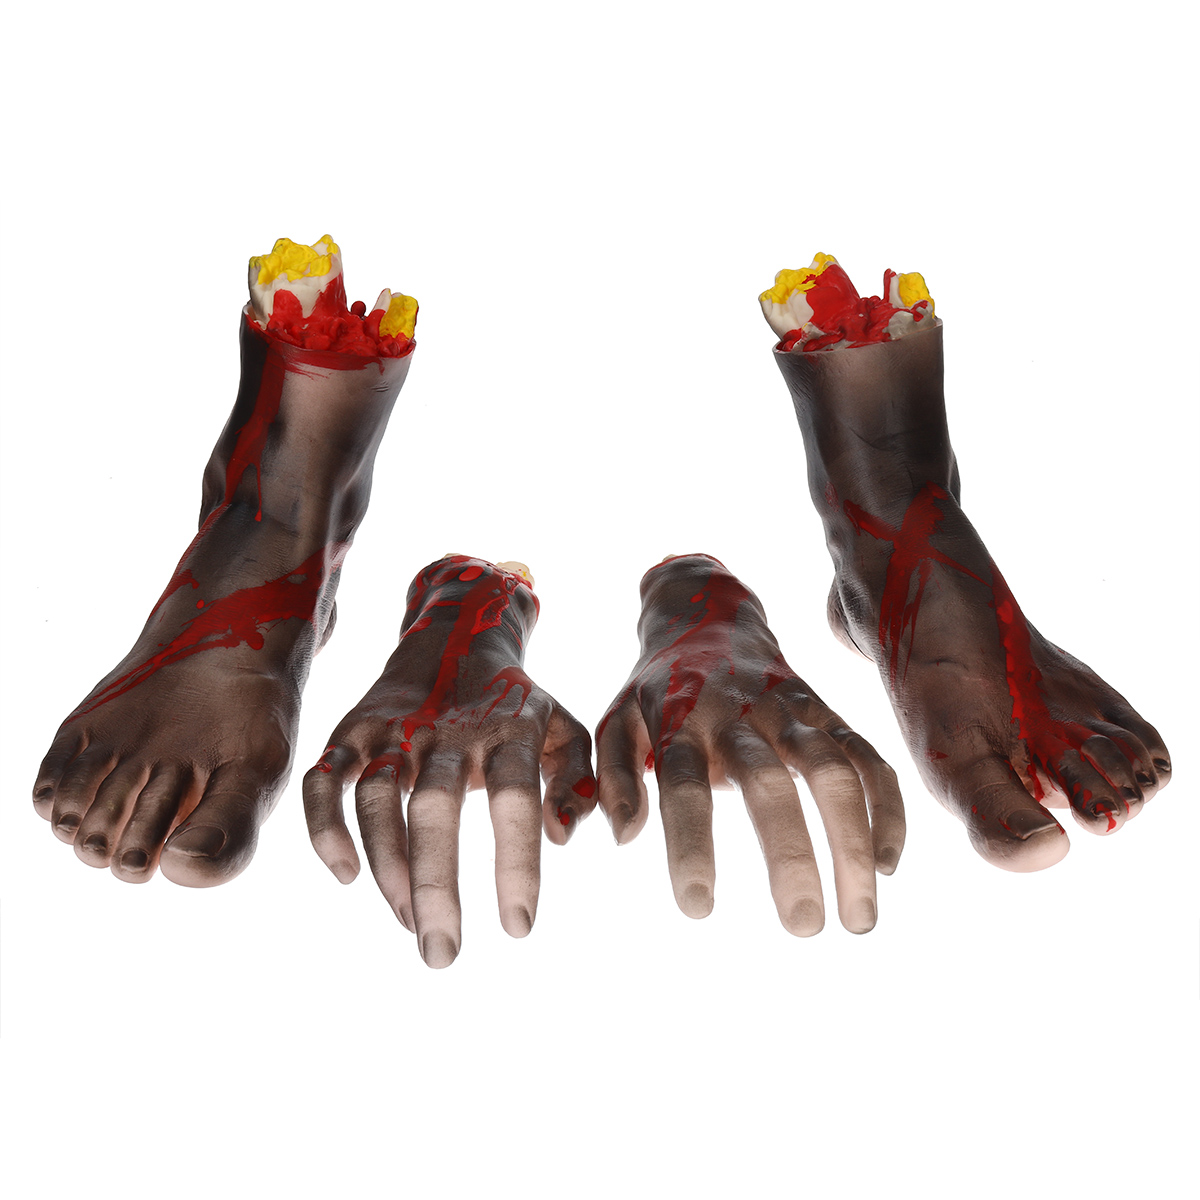 1-Pair-of-HandsFeet-Vinyl-Halloween-Horror-Broken-Hands-Realistic-Scene-Decoration-Props-Tricky-Toy-1751567-4